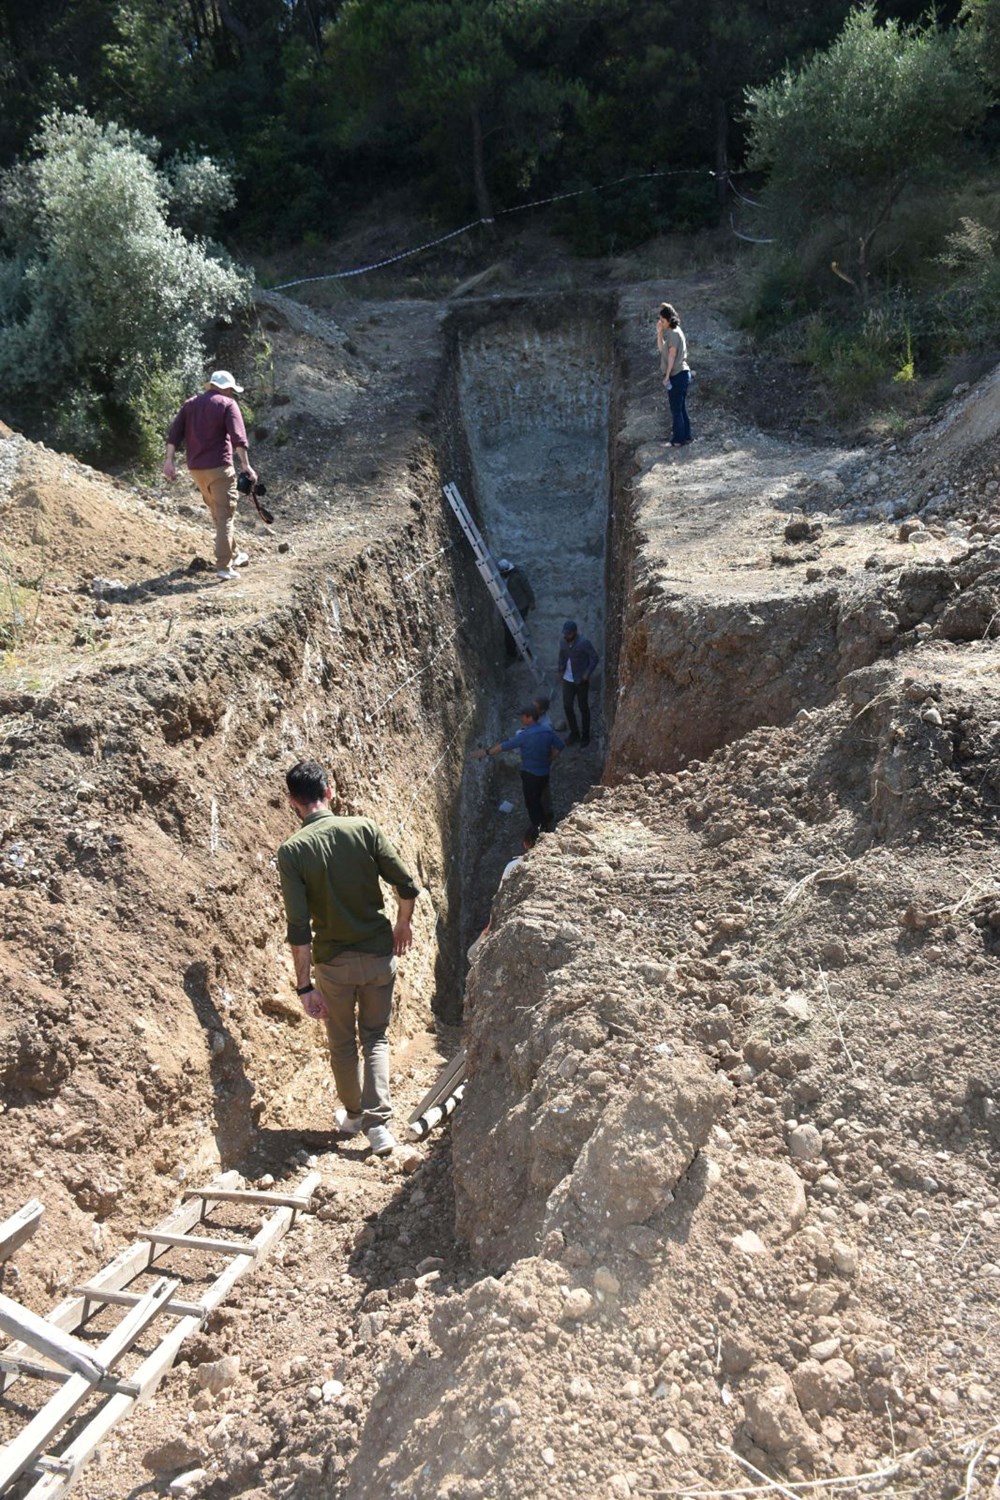 İzmir’de Kemalpaşa’nın altından geçen faya yakın takip |
Bilim insanları hendek açıp inceleme yaptı: “6,7 büyüklüğünde deprem üretebilir” - 10